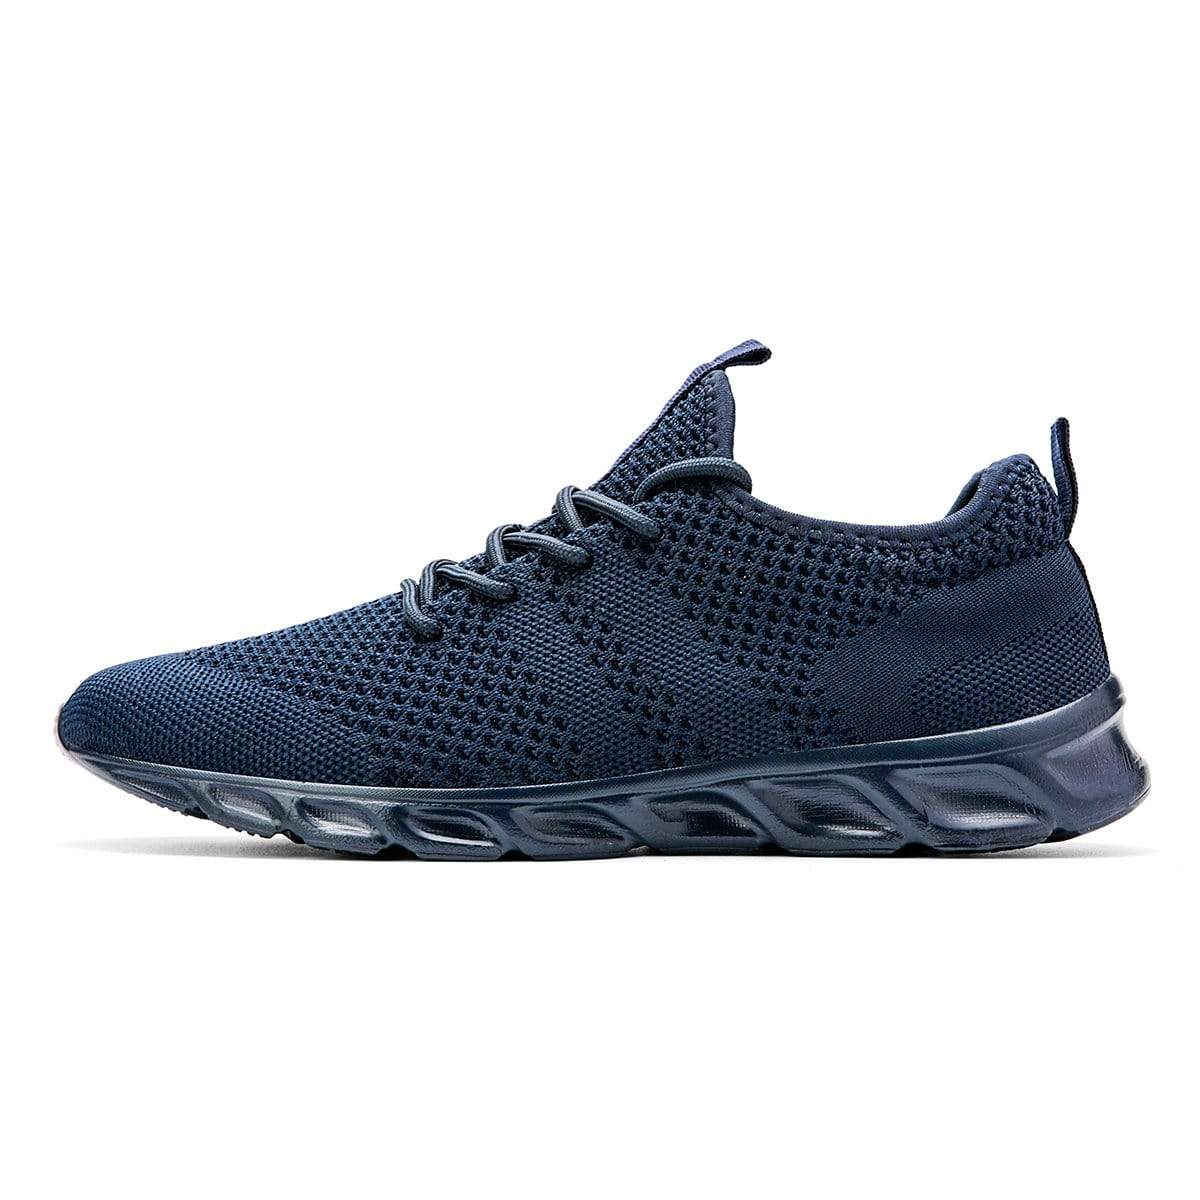 Damyuan blue / 4 Men's Women's Sports Shoes Breathable Tennis Sports Comfortable Jogging Shoes